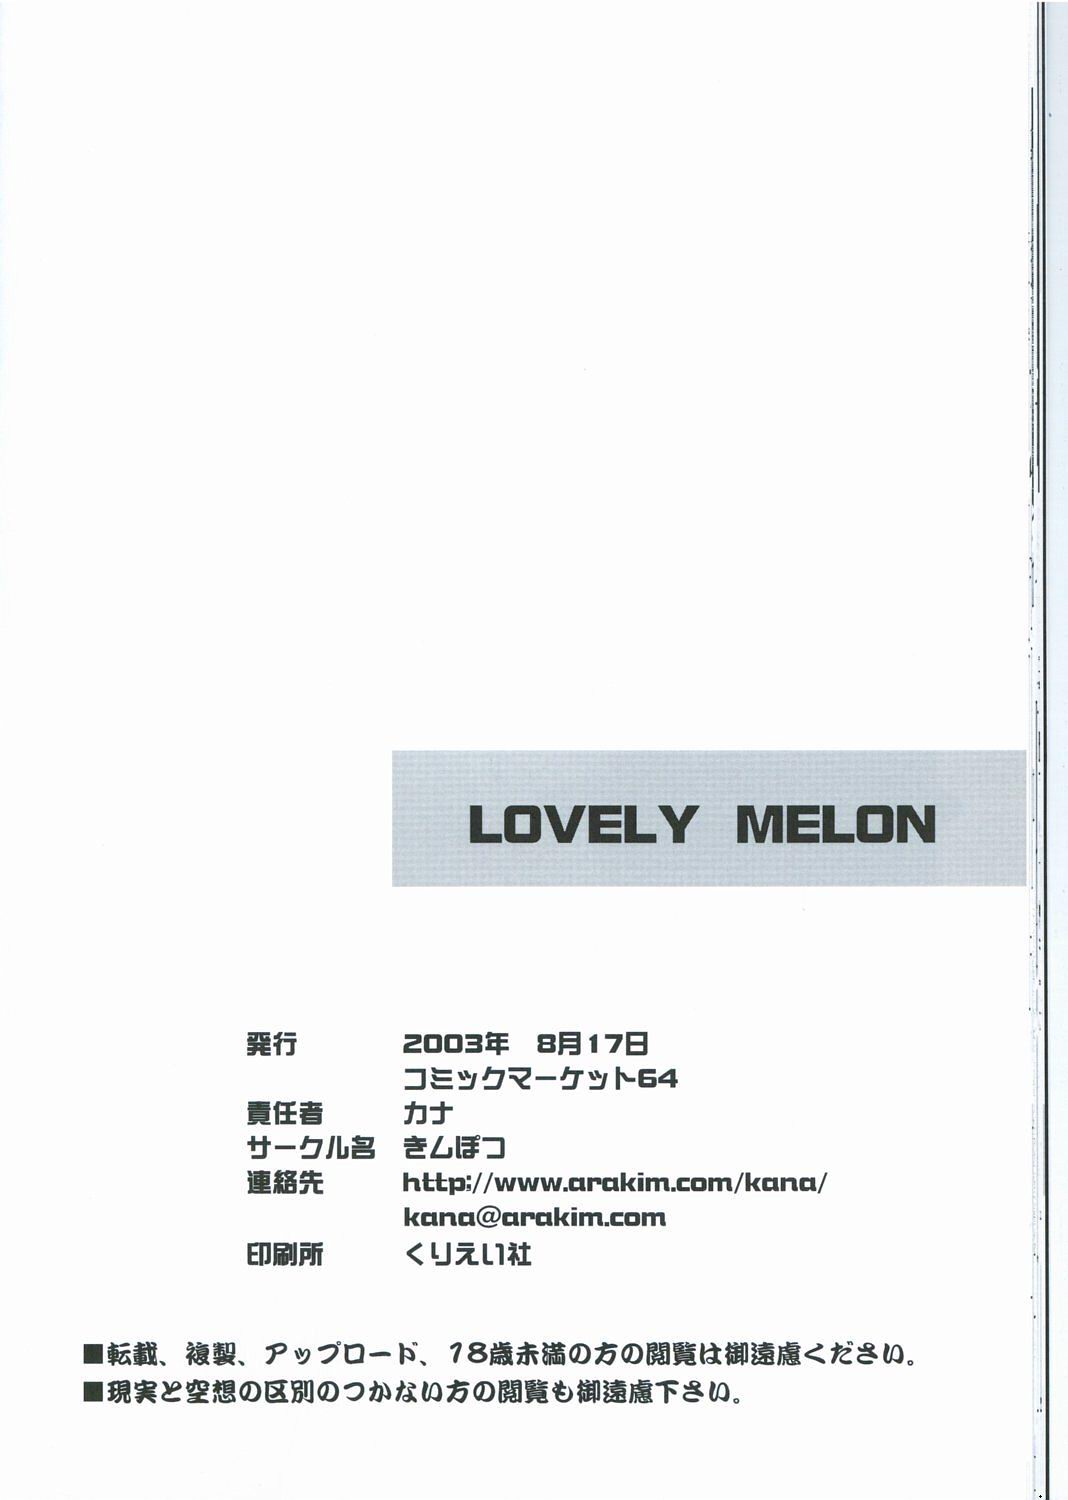 [きムぽつ (あらきかなお)] LOVELY MELON (焼きたて!!ジャぱん)